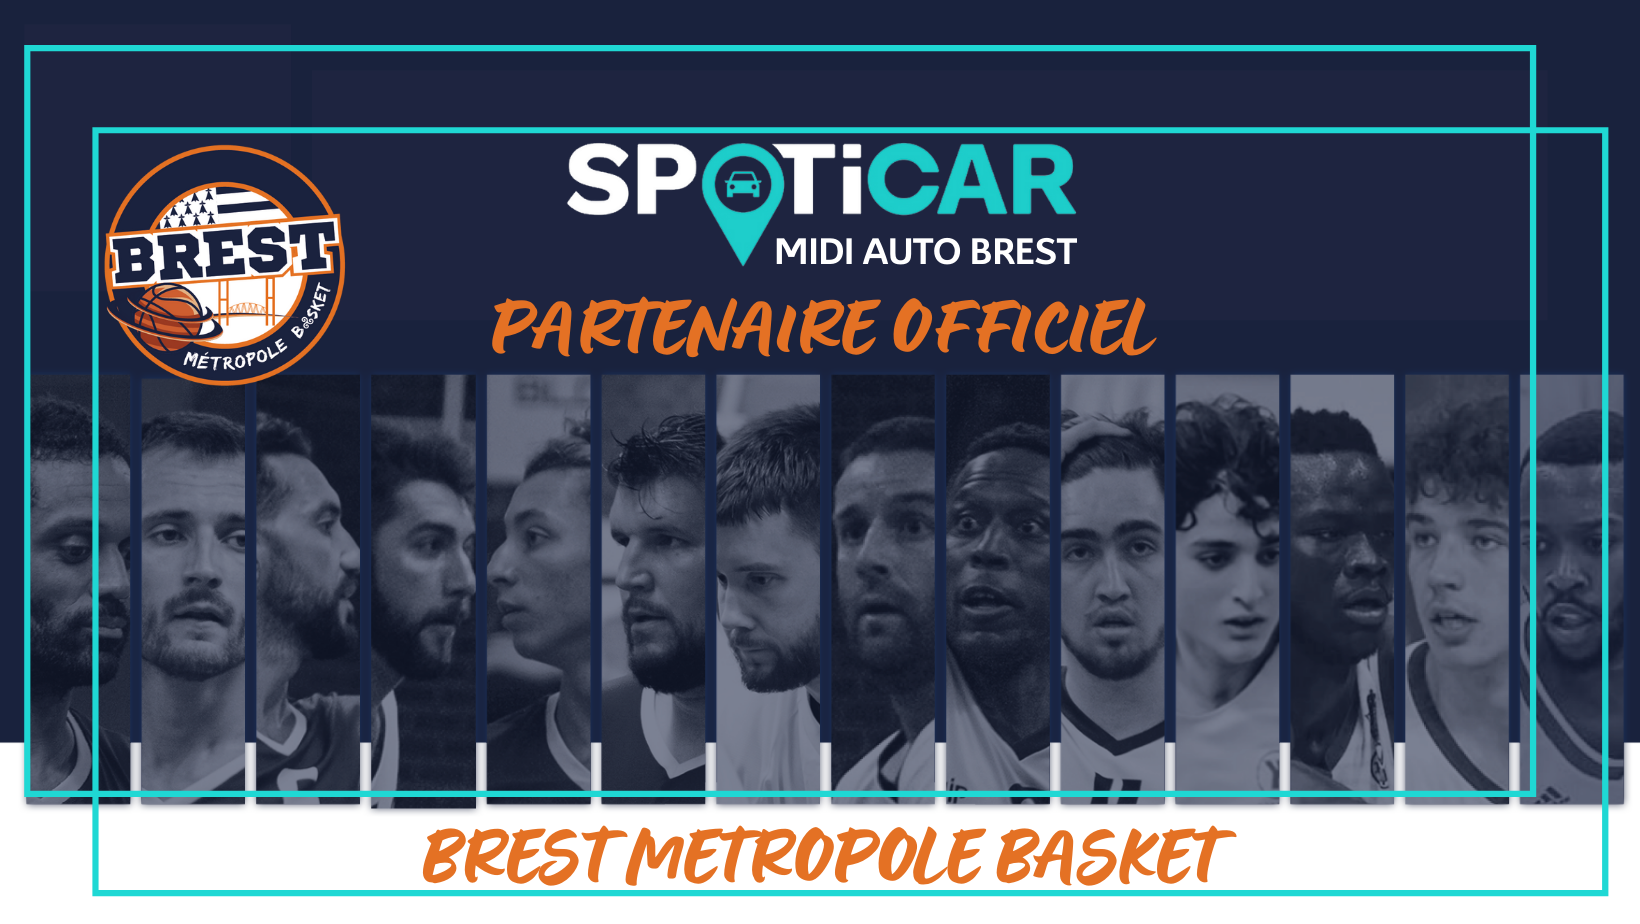 SPOTICAR MIDI AUTO BREST, partenaire officiel du Brest Métropole Basket